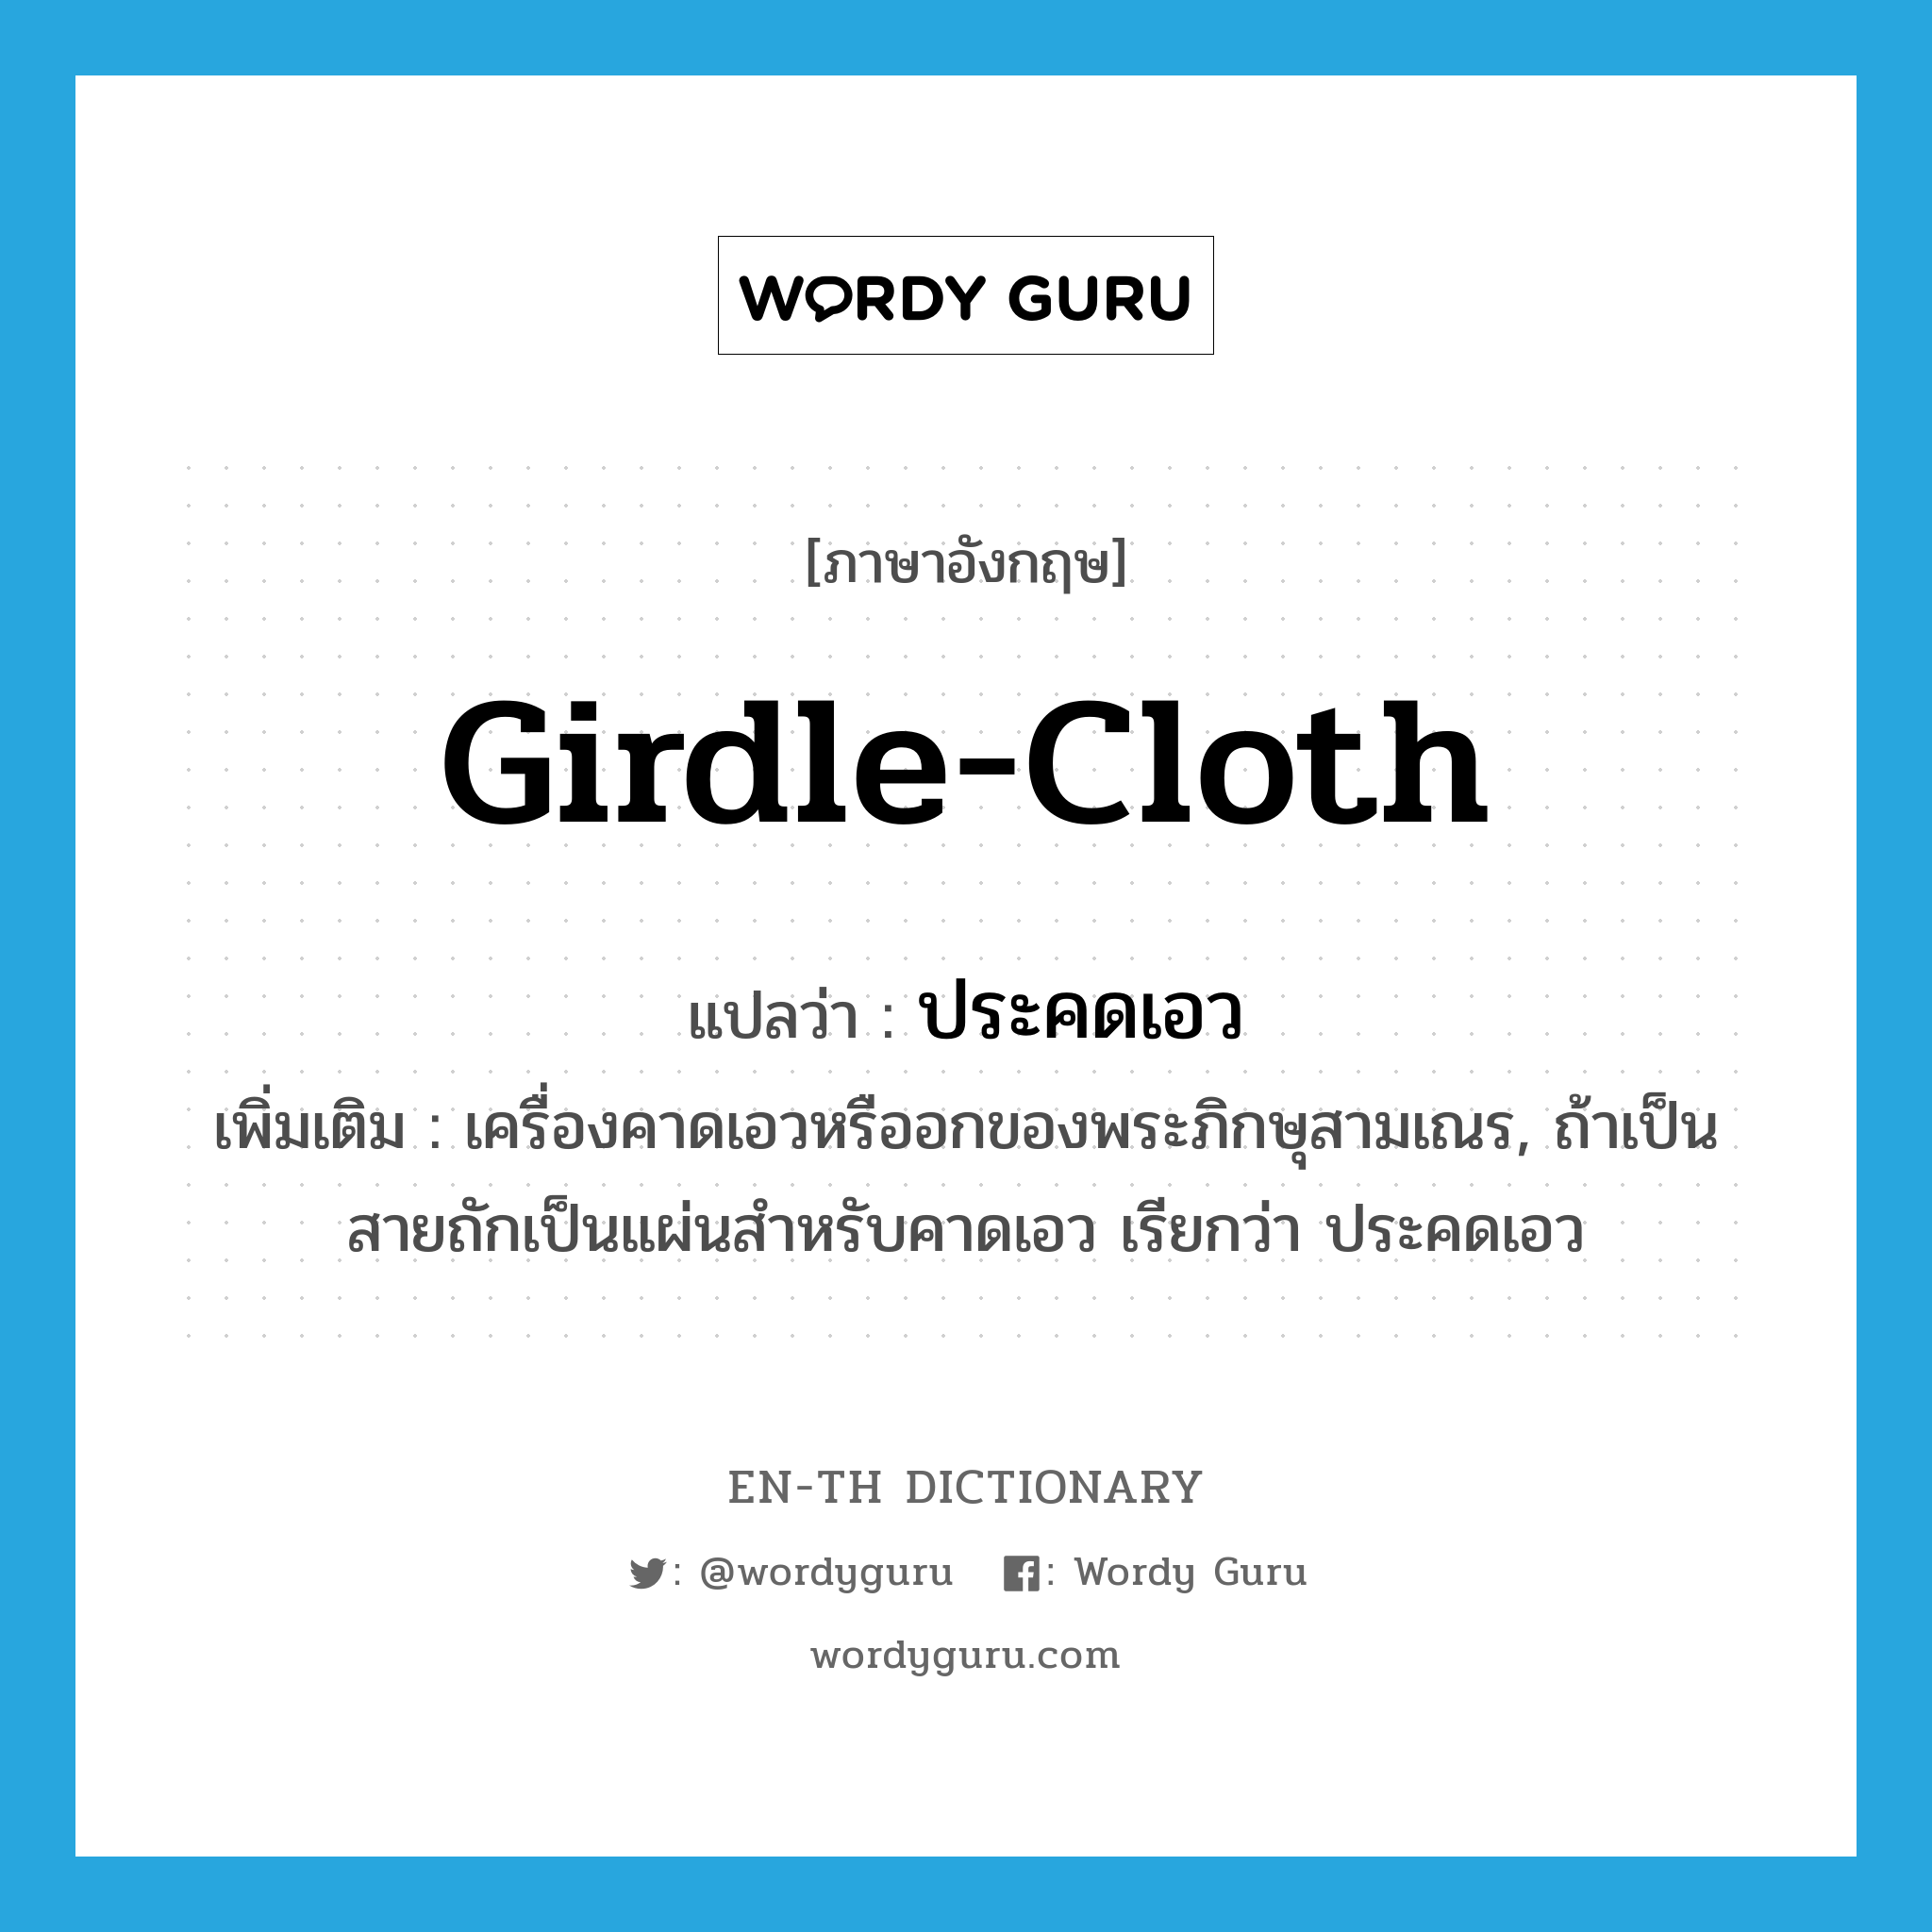 girdle-cloth แปลว่า?, คำศัพท์ภาษาอังกฤษ girdle-cloth แปลว่า ประคดเอว ประเภท N เพิ่มเติม เครื่องคาดเอวหรืออกของพระภิกษุสามเณร, ถ้าเป็นสายถักเป็นแผ่นสำหรับคาดเอว เรียกว่า ประคดเอว หมวด N